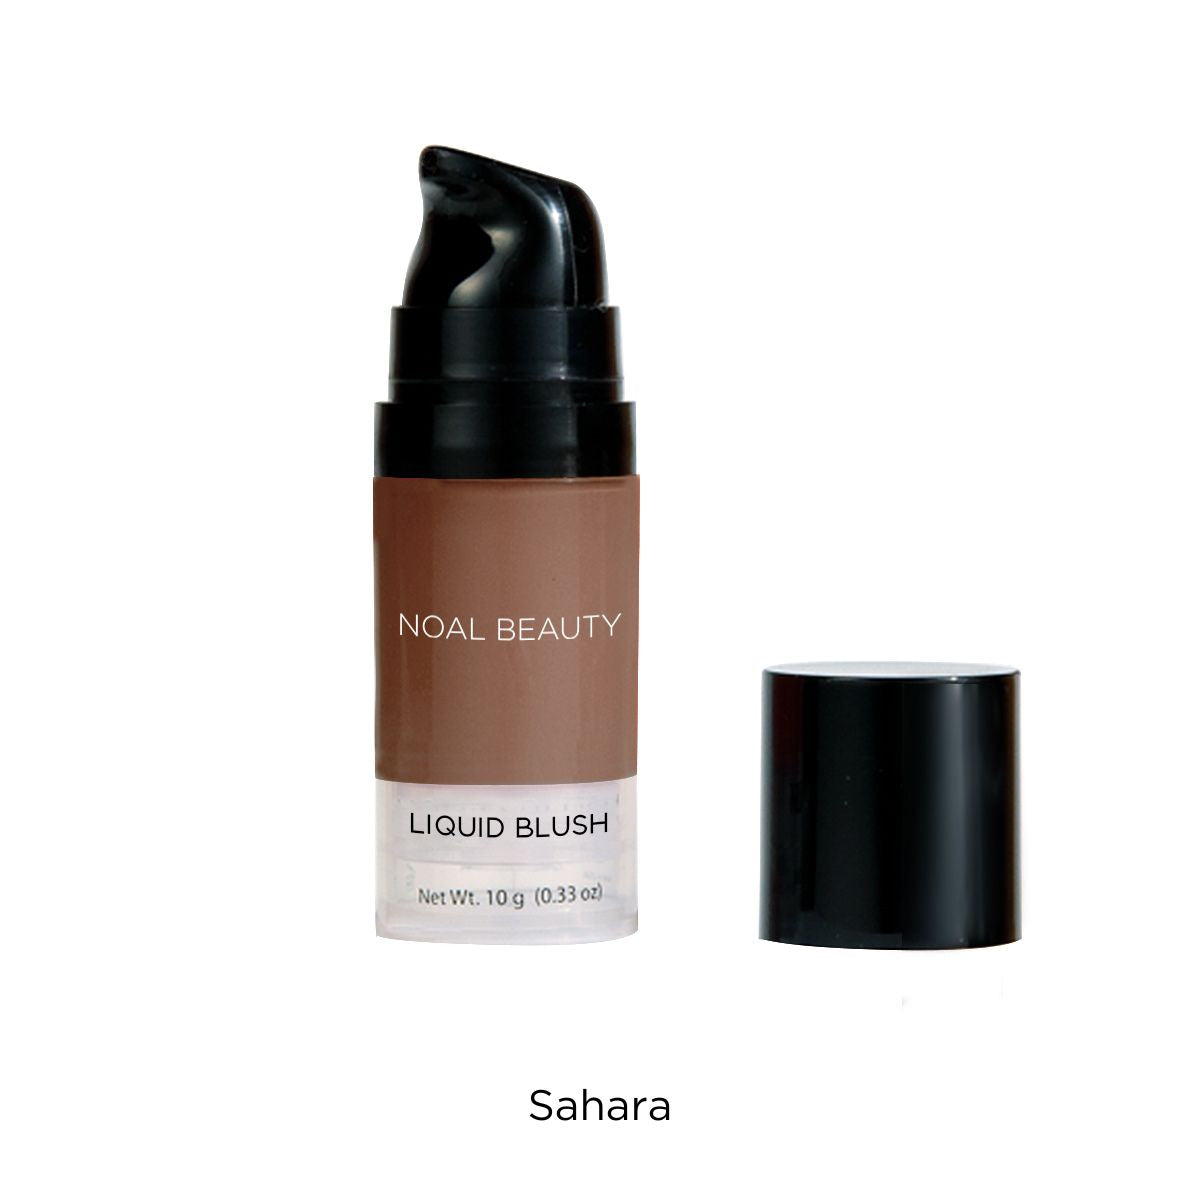 noal-beauty-sahara-liquid-blush-bottle-2